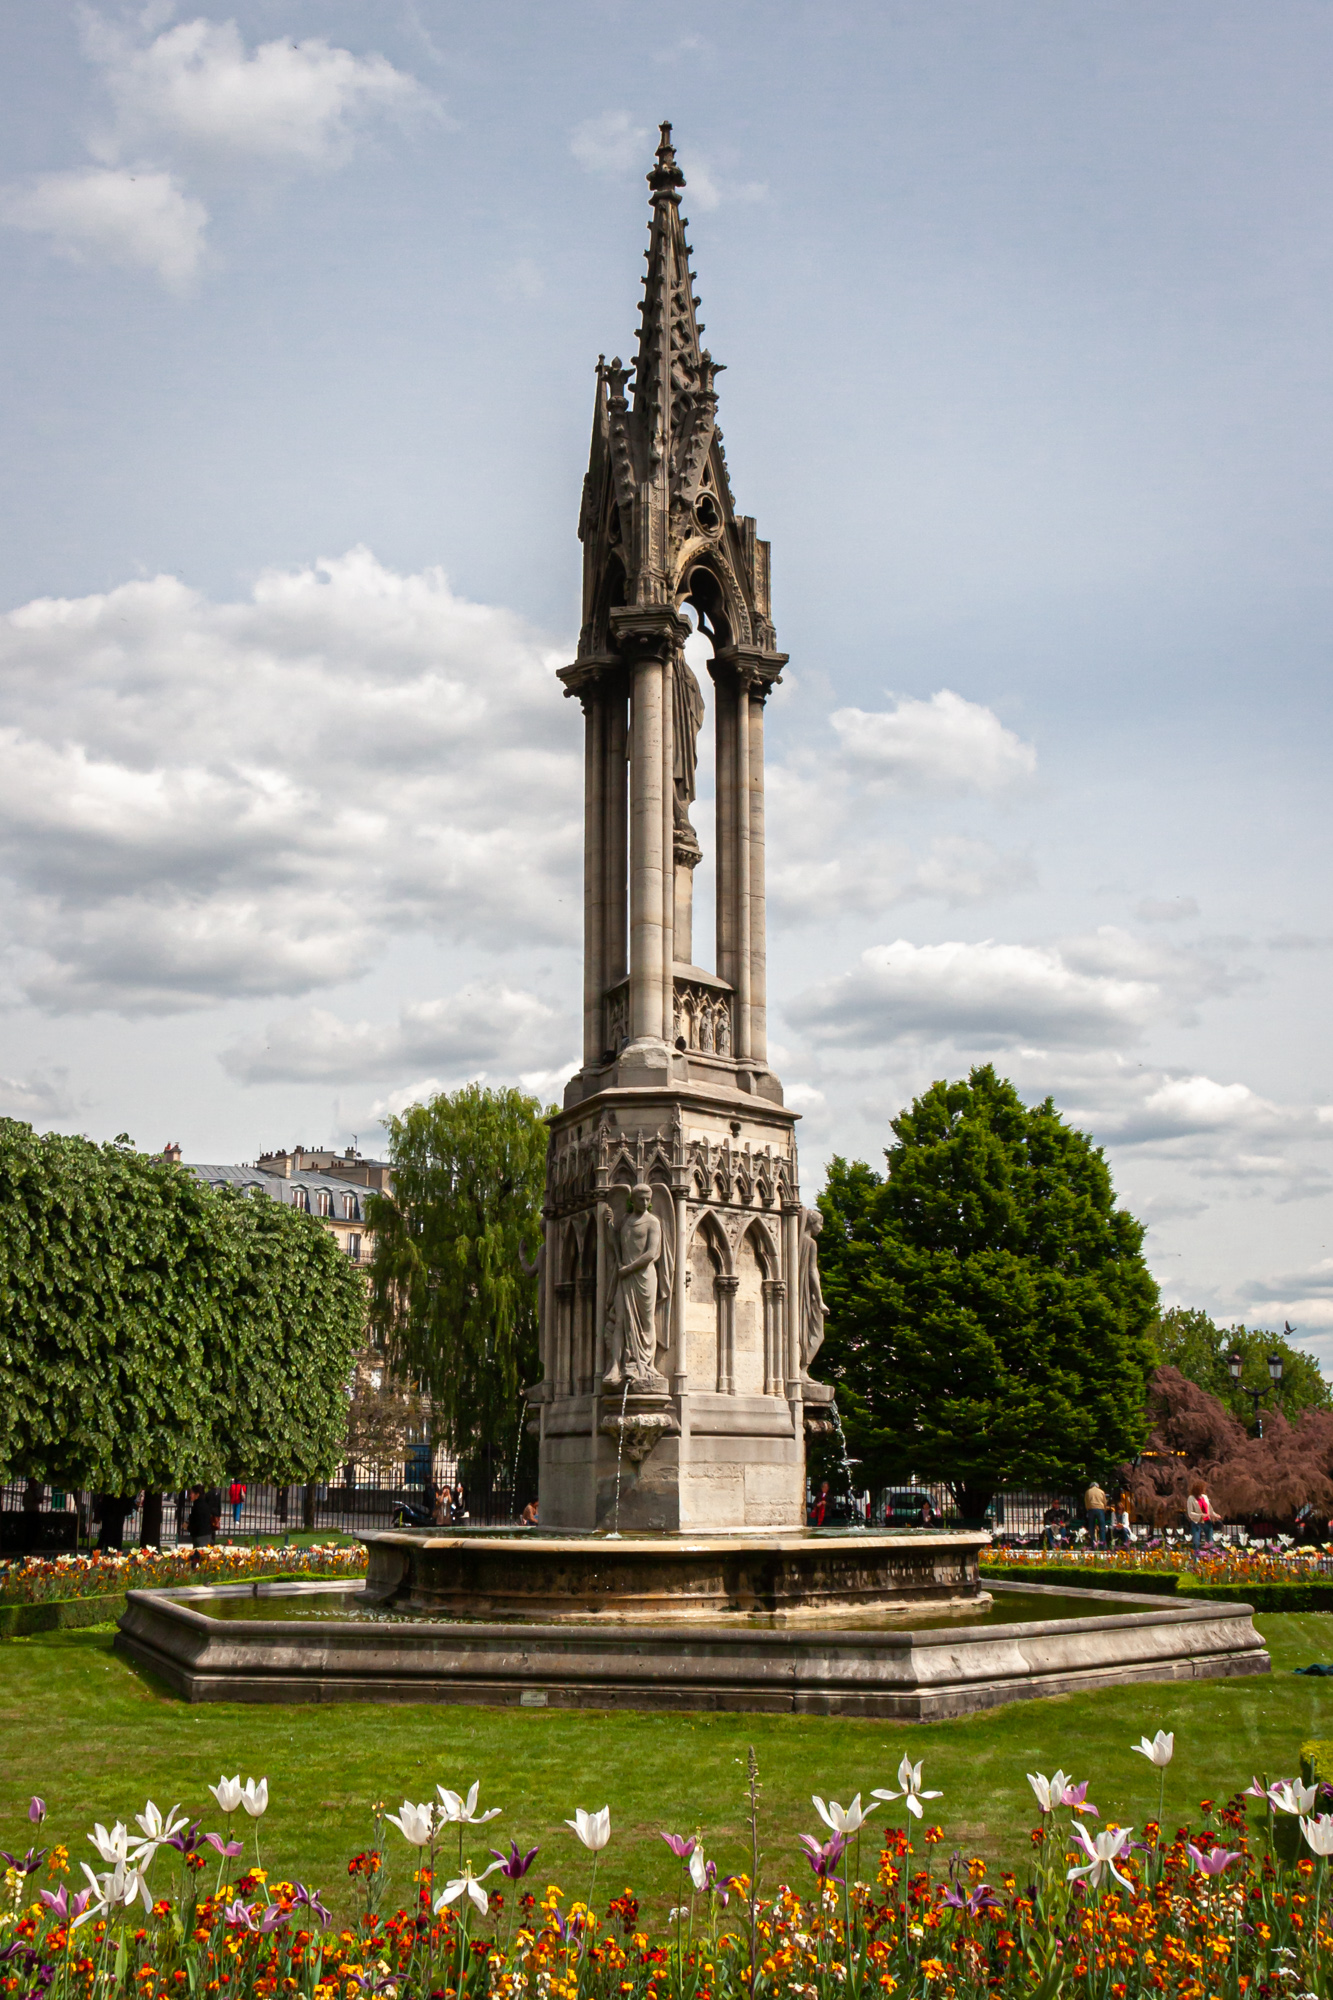 Fontaine de la Vierge at Notre Dame Cathedral. Paris, France.